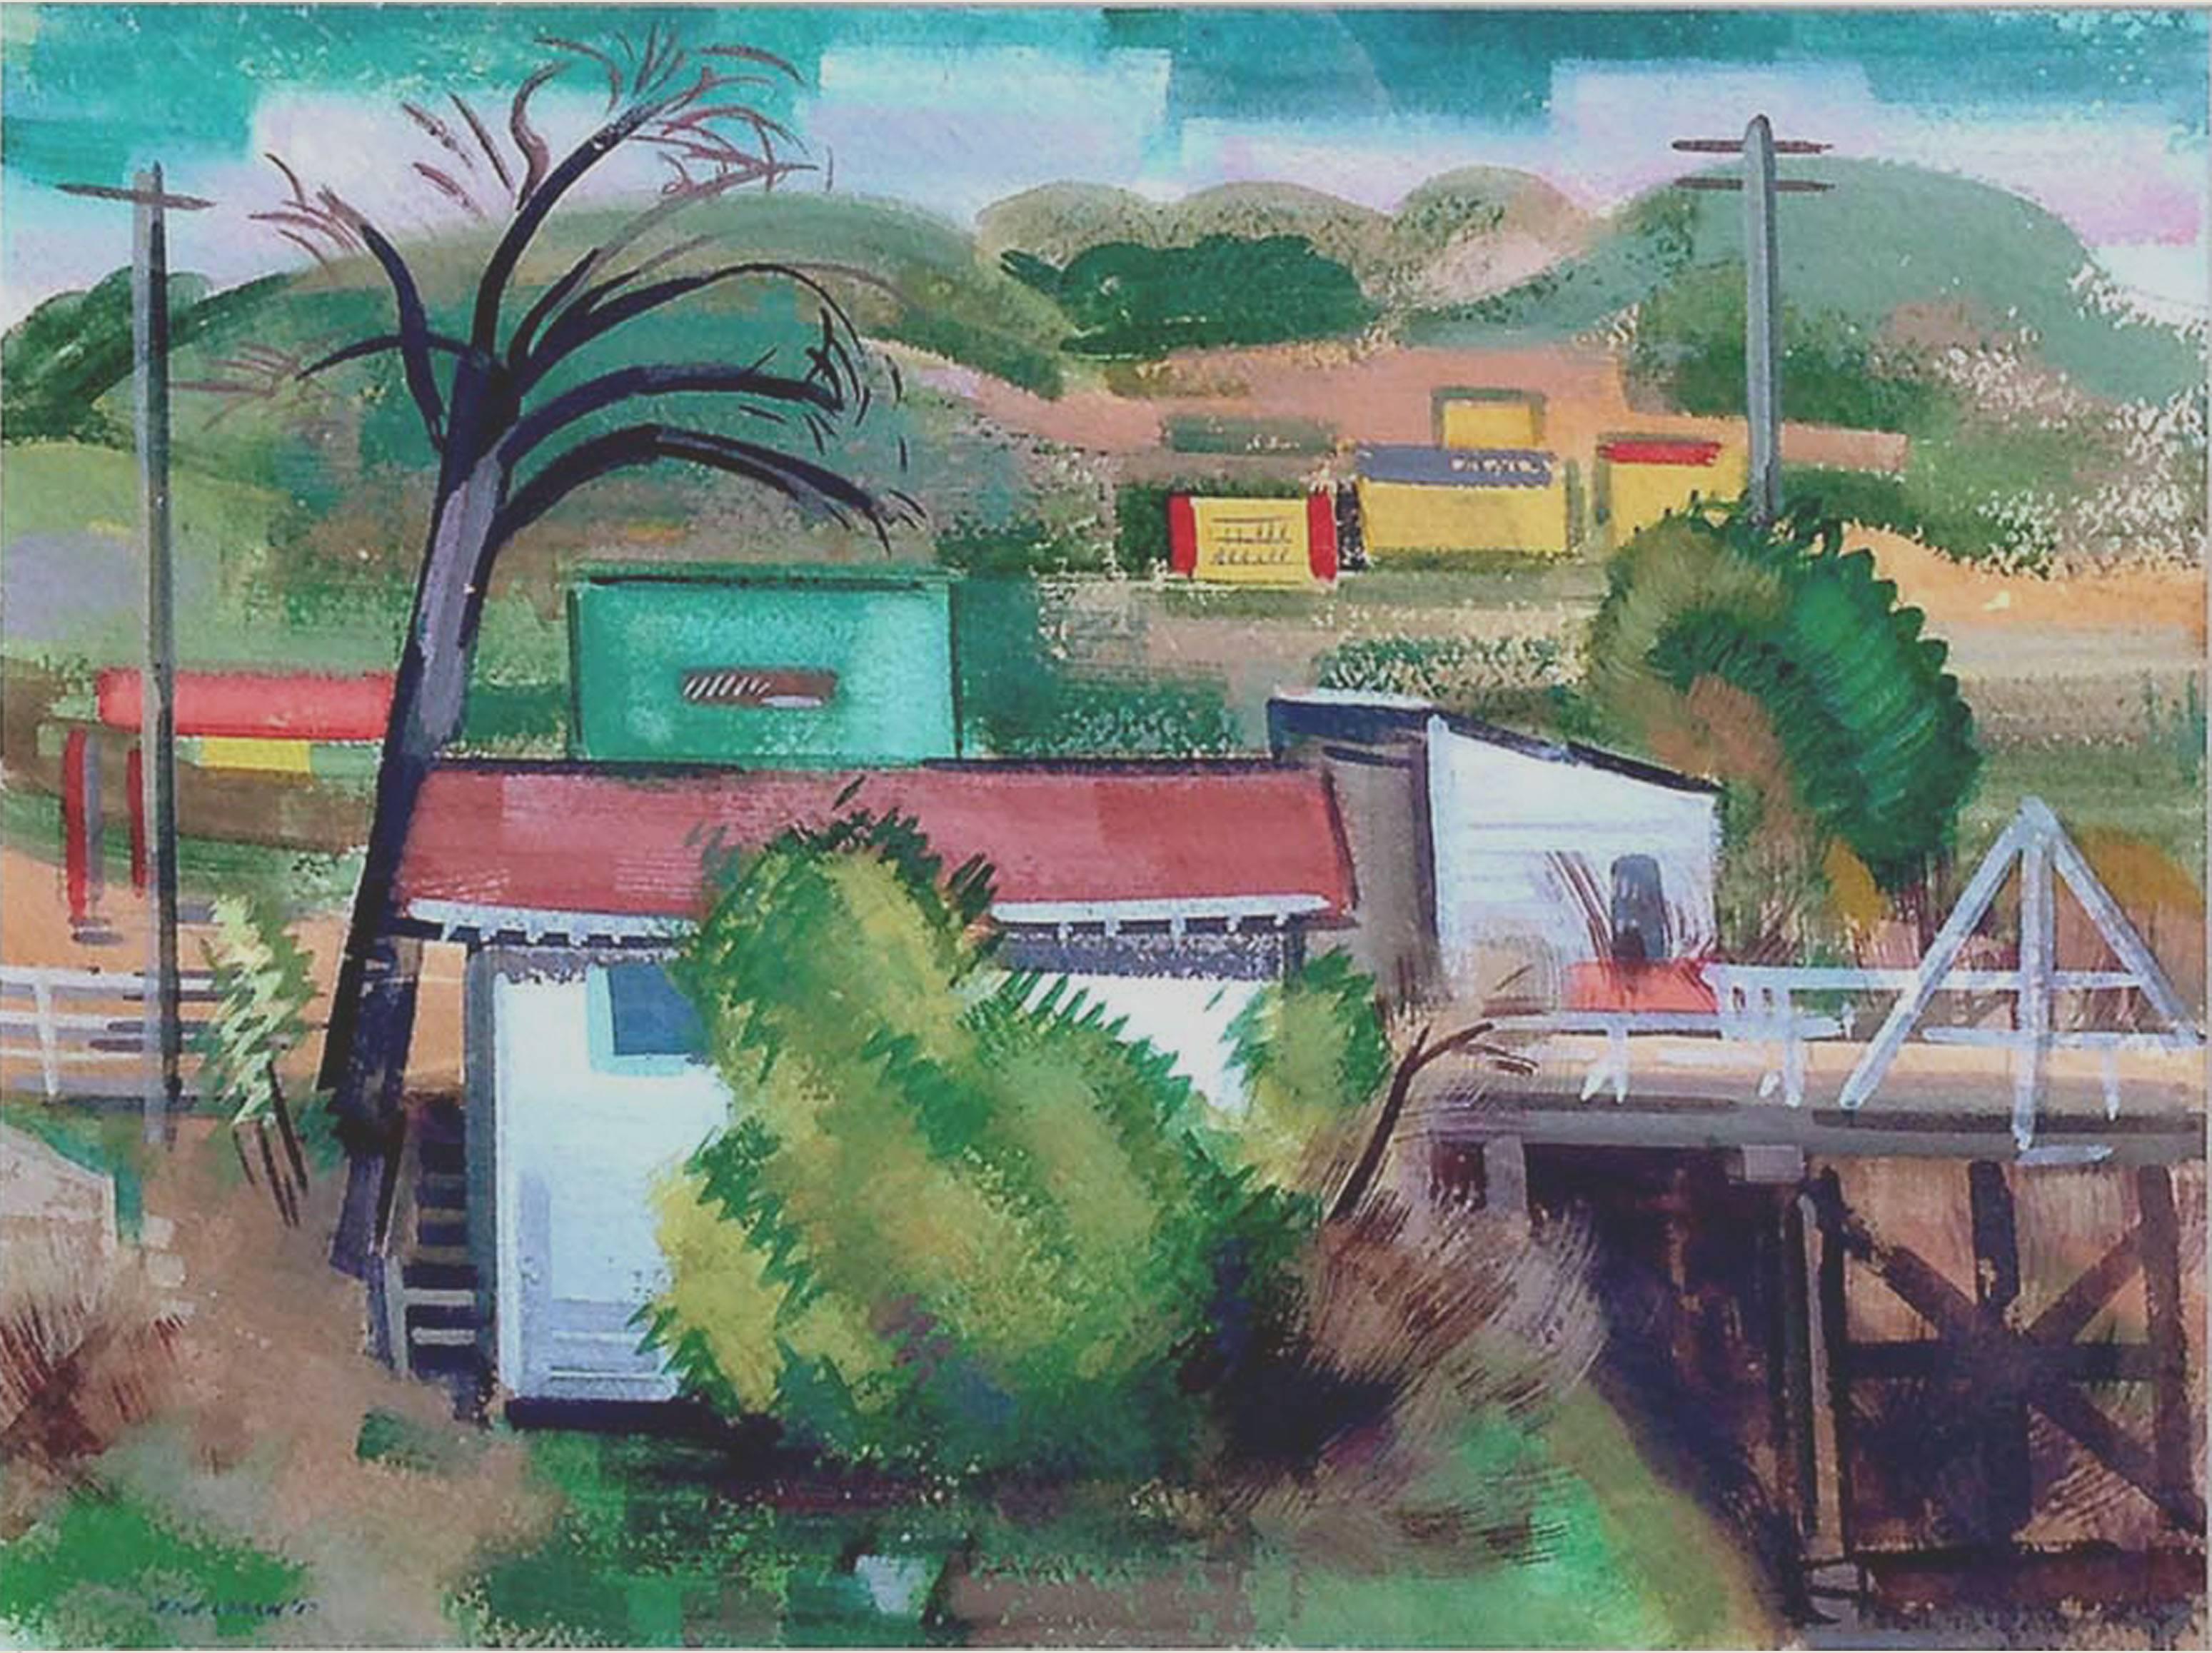 Paysage de scène industrielle californien du début du XXe siècle  - Painting de Erle Loran